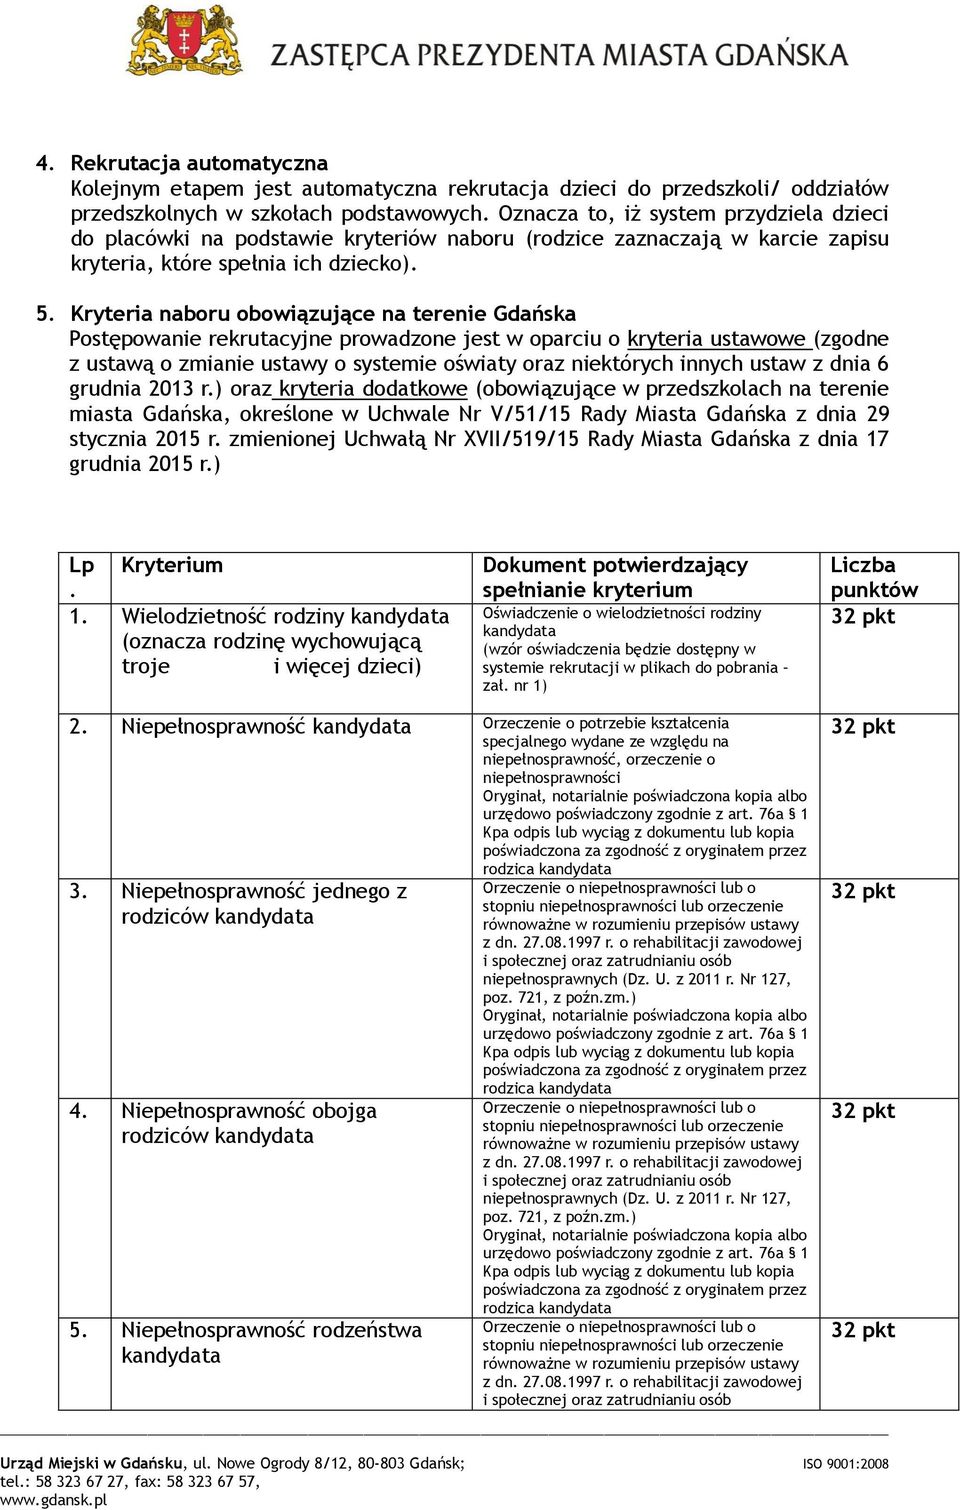 Kryteria naboru obowiązujące na terenie Gdańska Postępowanie rekrutacyjne prowadzone jest w oparciu o kryteria ustawowe (zgodne z ustawą o zmianie ustawy o systemie oświaty oraz niektórych innych